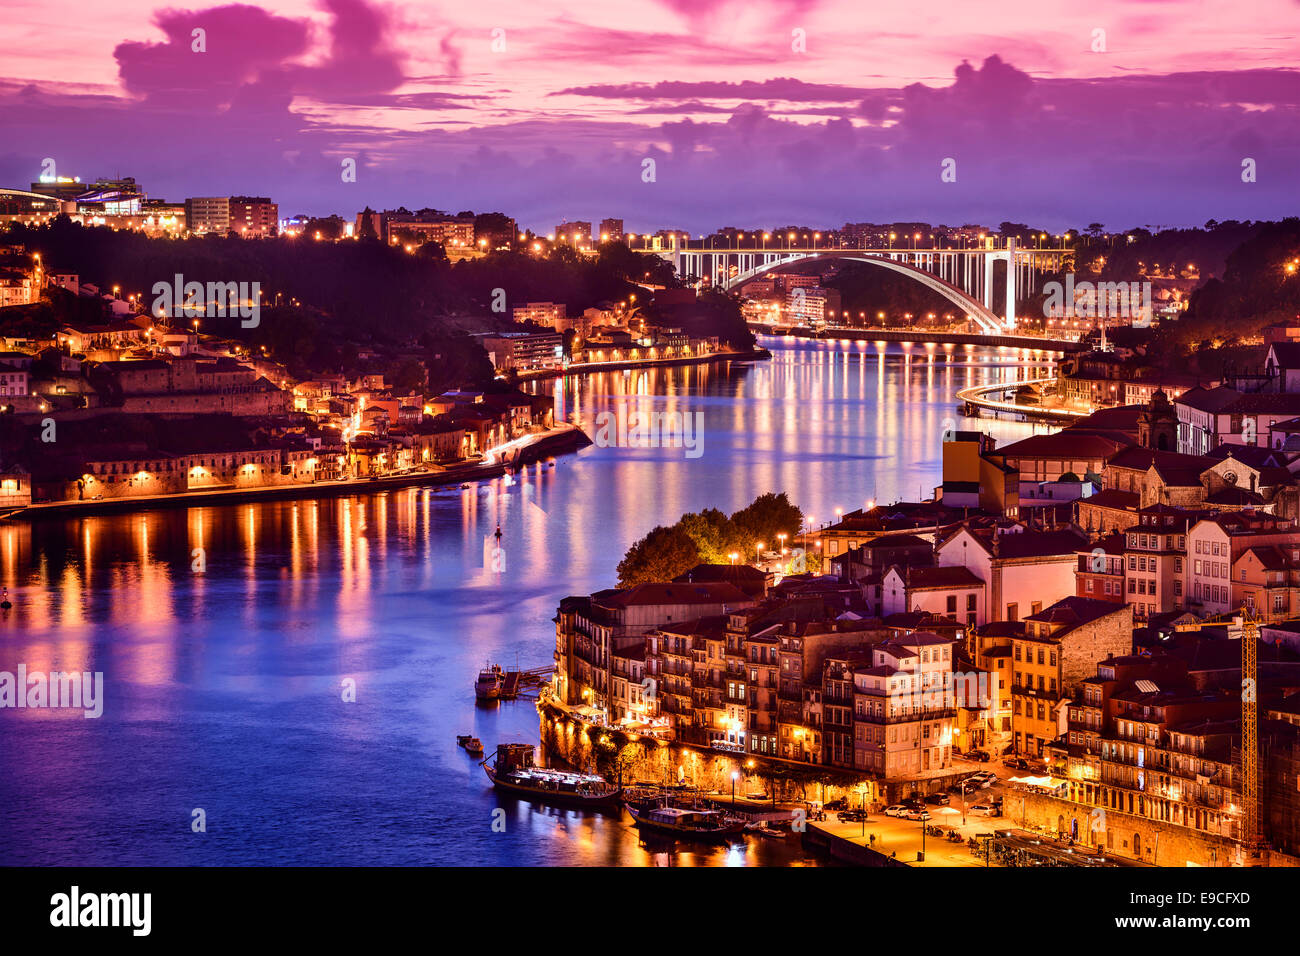 Porto, Portugal cityscape on the Douro River. Stock Photo